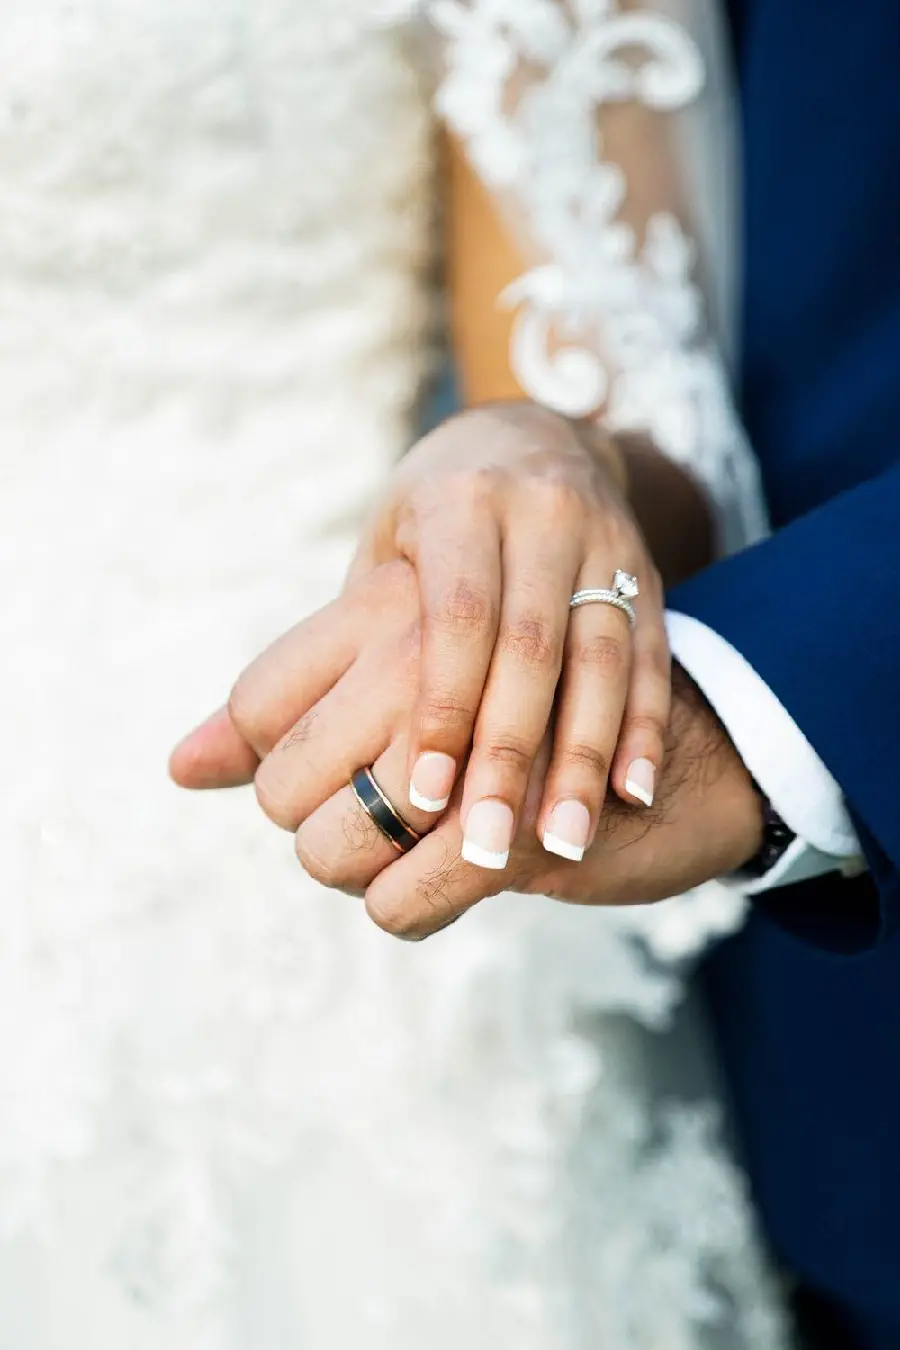 دست عروس و داماد در عکاسی با کیفیت بالا